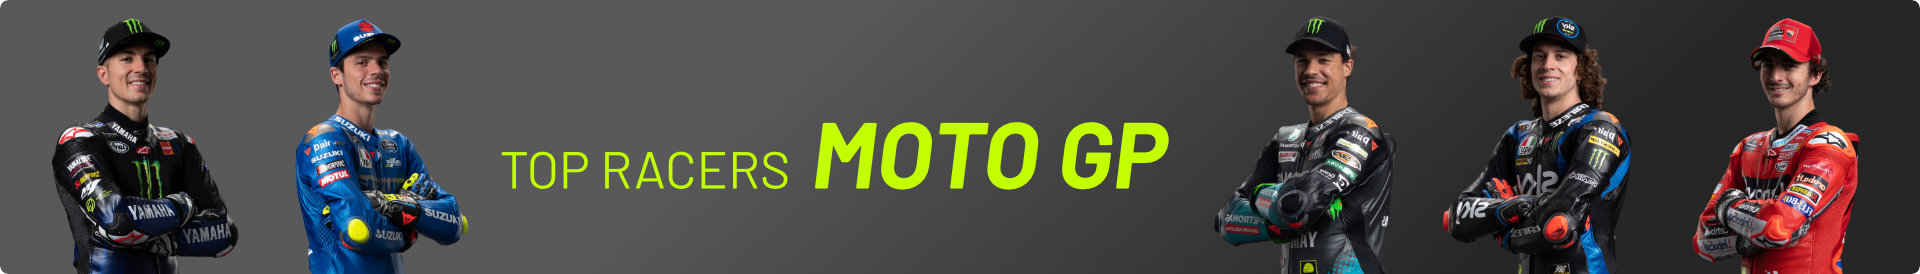 Kolekce oblečení Moto GP